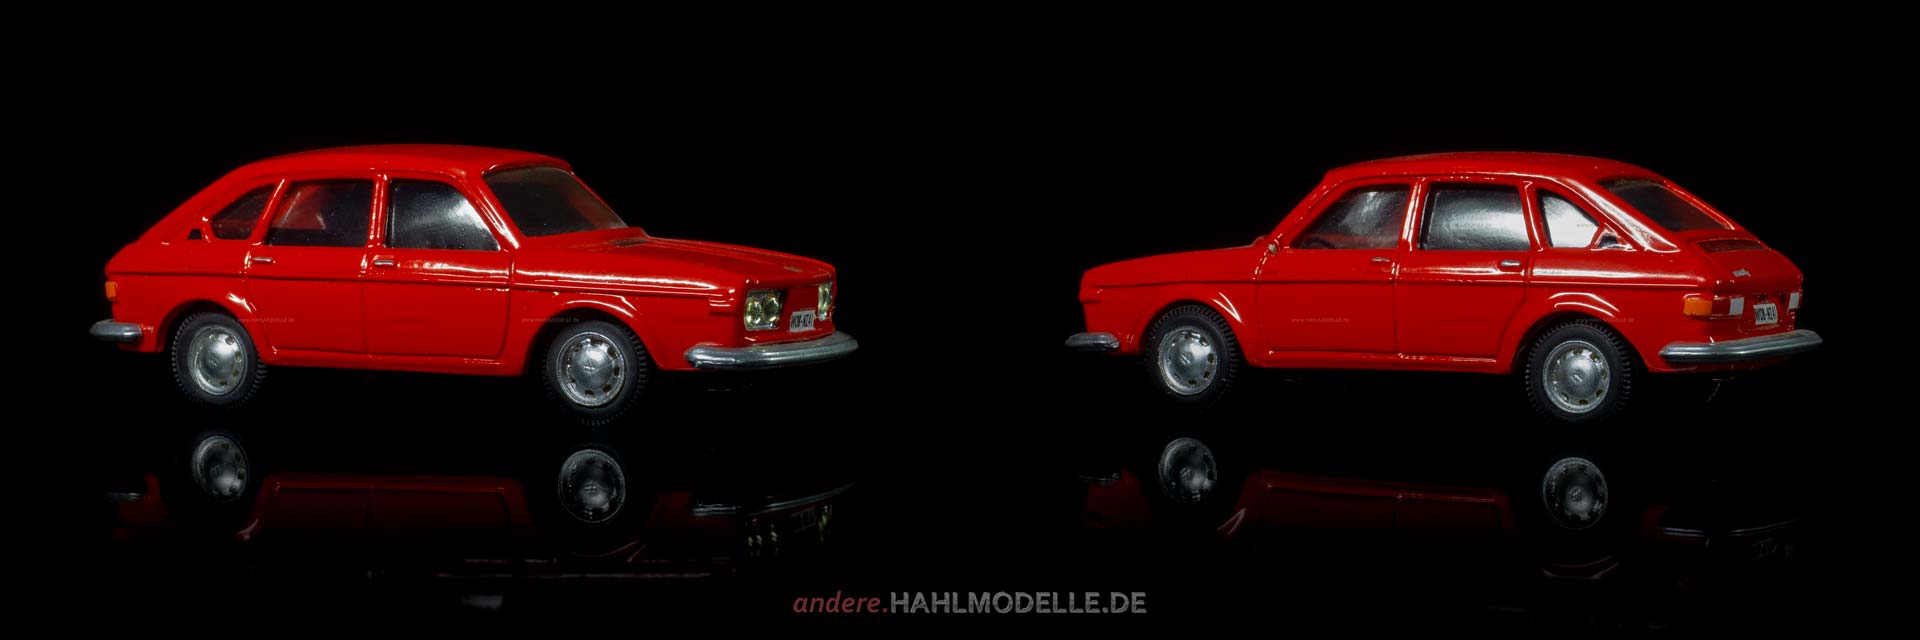 Volkswagen 412 LE (Typ 4) | Limousine | Miniroute | 1:43 | www.andere.hahlmodelle.de